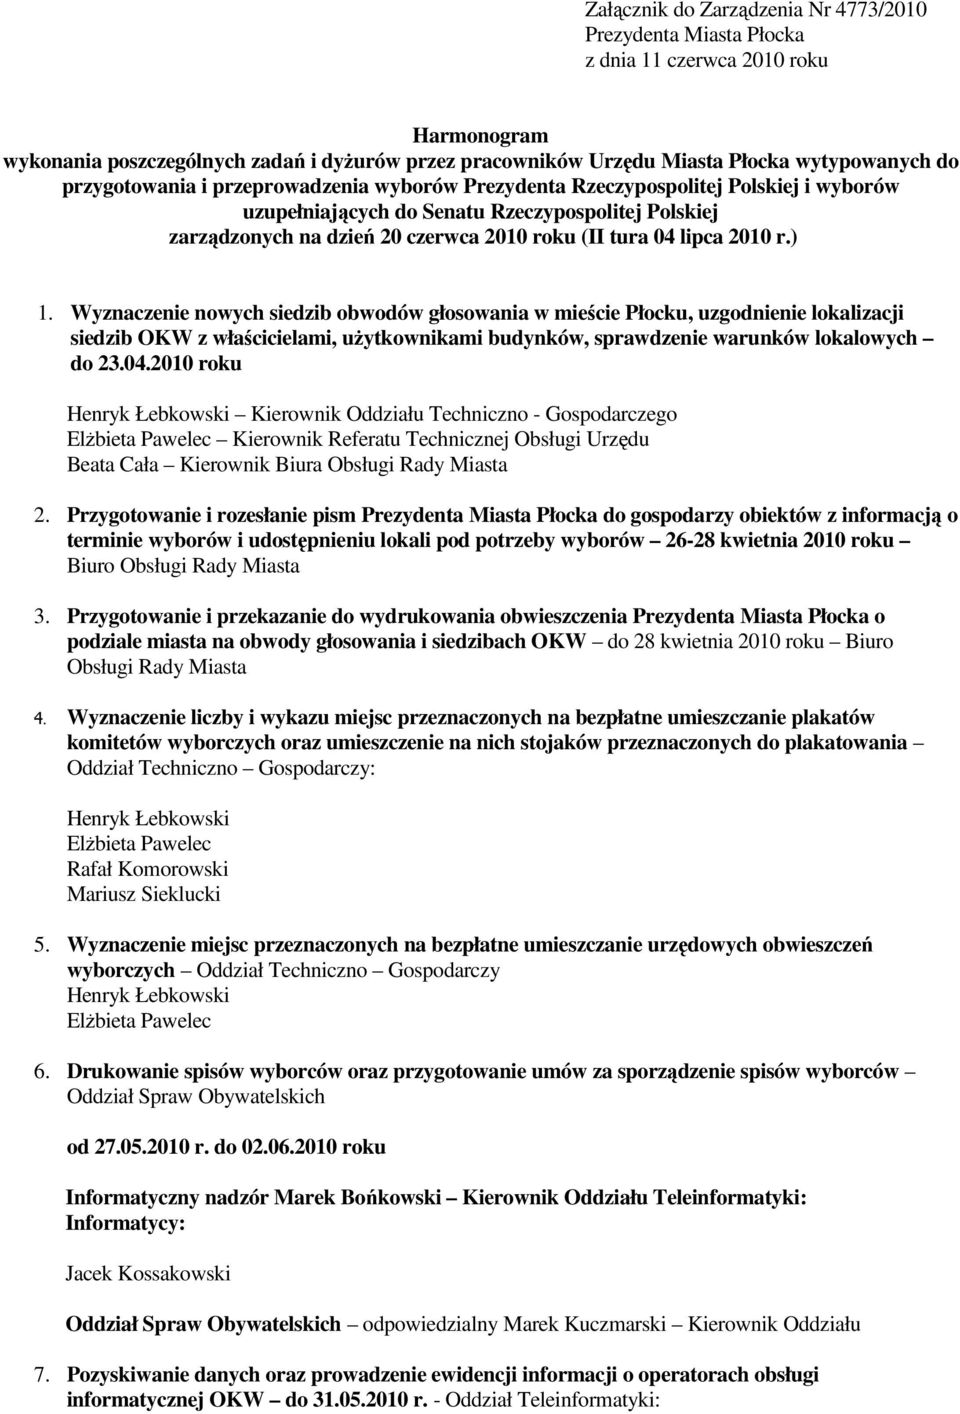 2010 r.) 1. Wyznaczenie nowych siedzib obwodów głosowania w mieście Płocku, uzgodnienie lokalizacji siedzib OKW z właścicielami, użytkownikami budynków, sprawdzenie warunków lokalowych do 23.04.